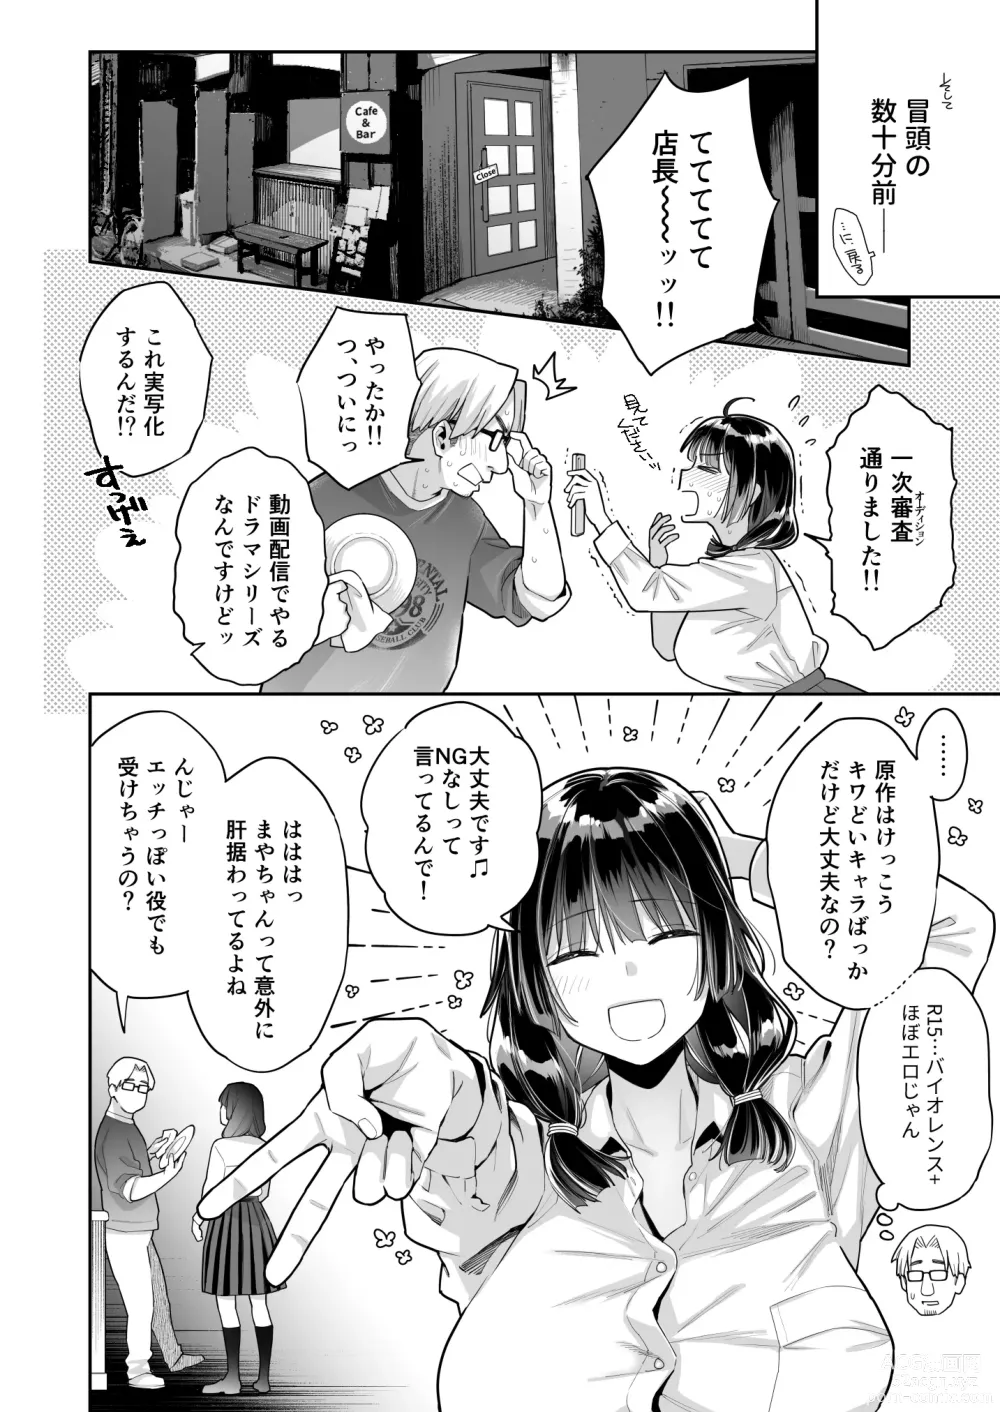 Page 10 of doujinshi Kono Sex wa Engi desu!!